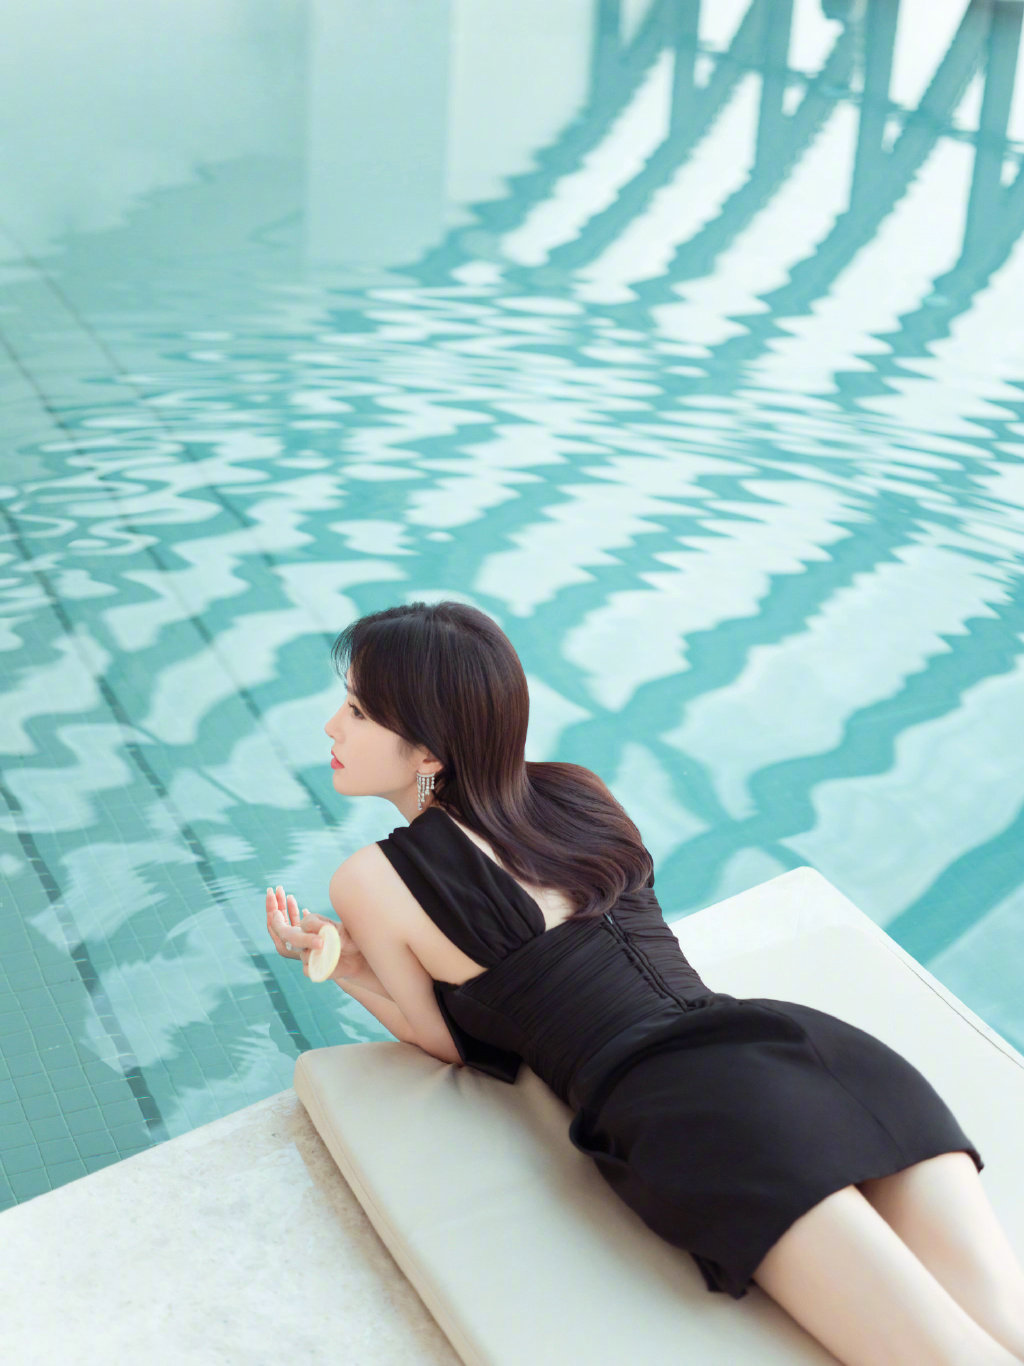 简介:秦岚黑色短裙清凉泳池写真图片,分享一组秦岚图片给大家,图中的